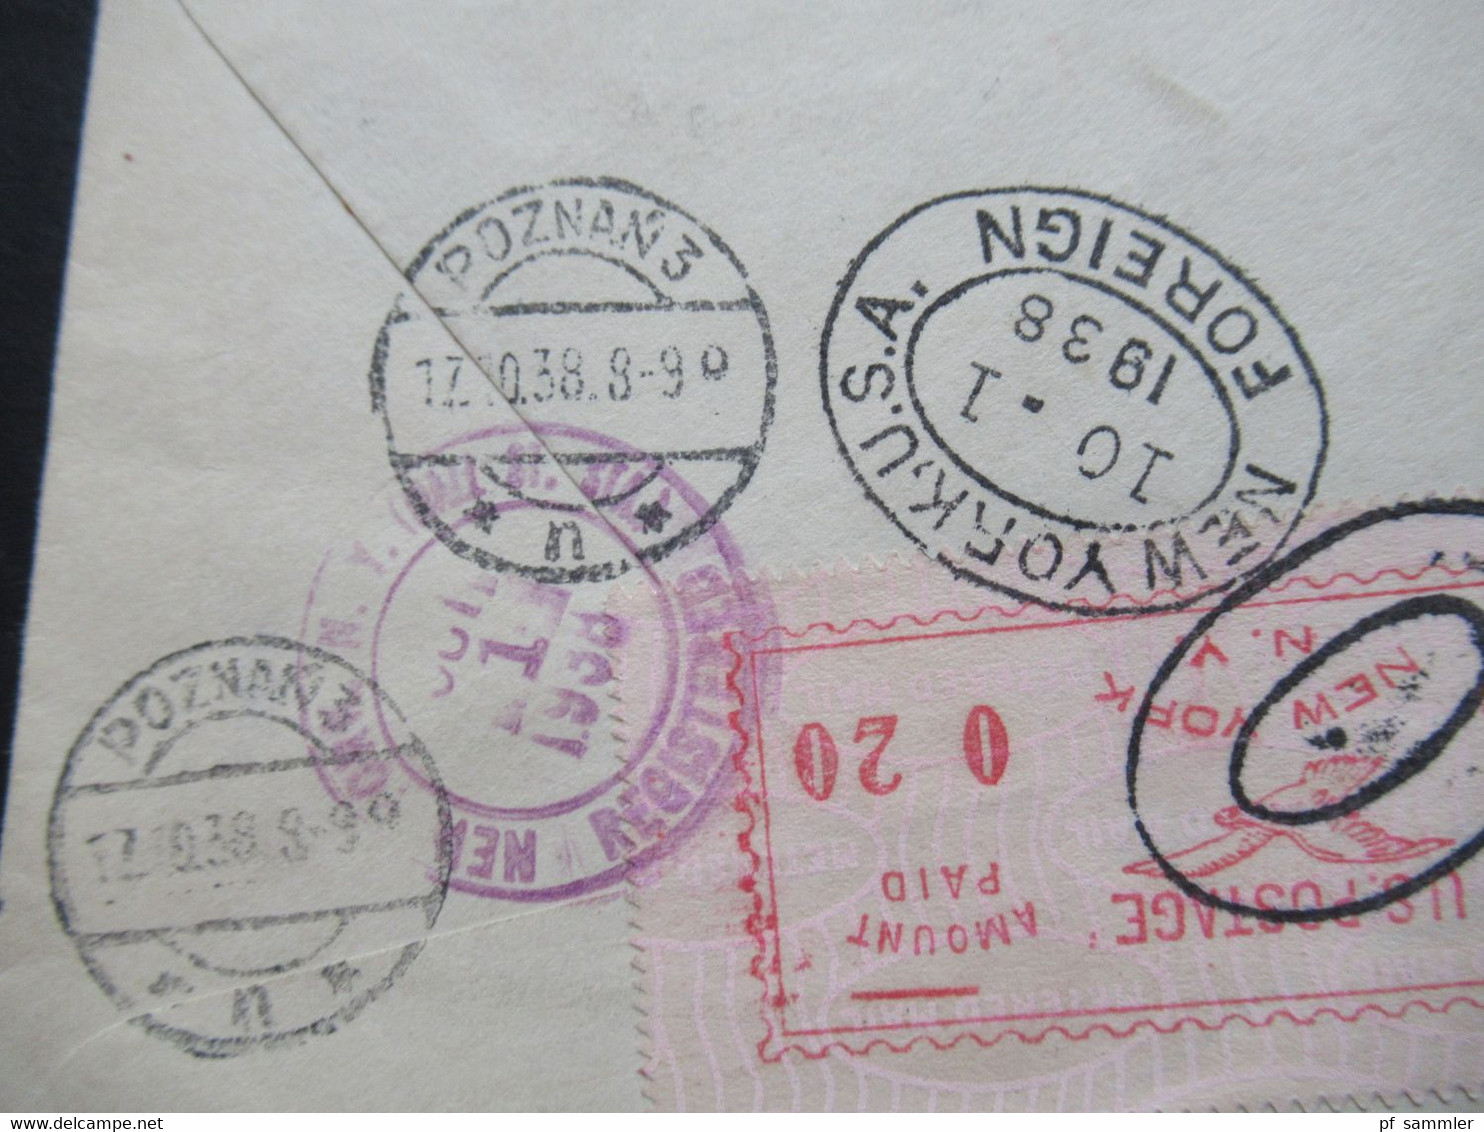 USA 1938 registered letter Bank of New York Luftpost nach Posen / Poznan an Baroness von Ohnesorge rücks. 9 Stempel